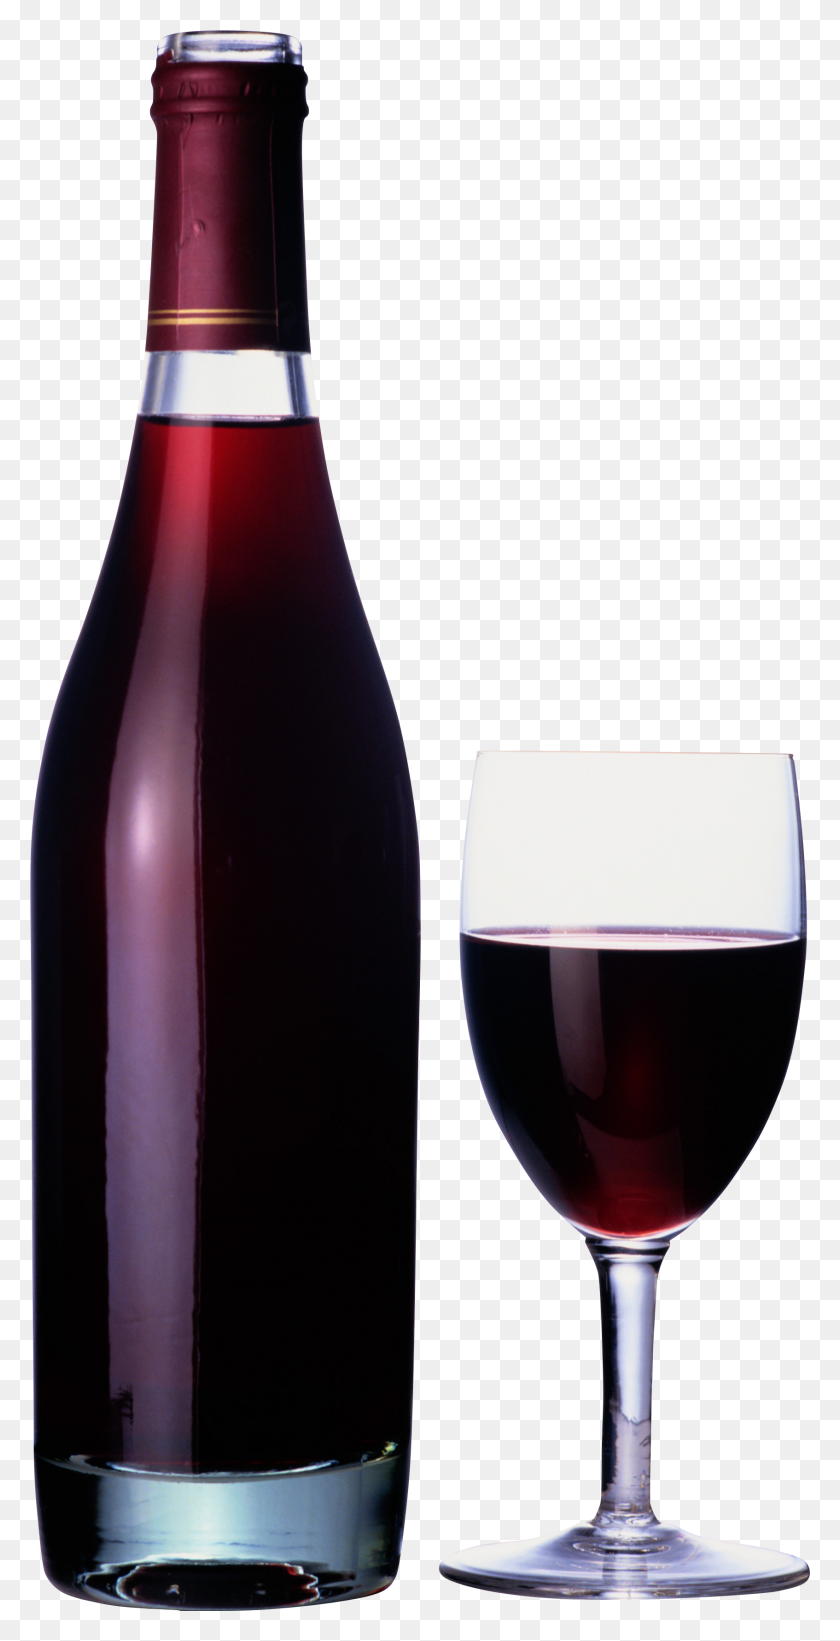 1694x3435 Wine Bottle Png Image - Wine Bottle Clip Art Free